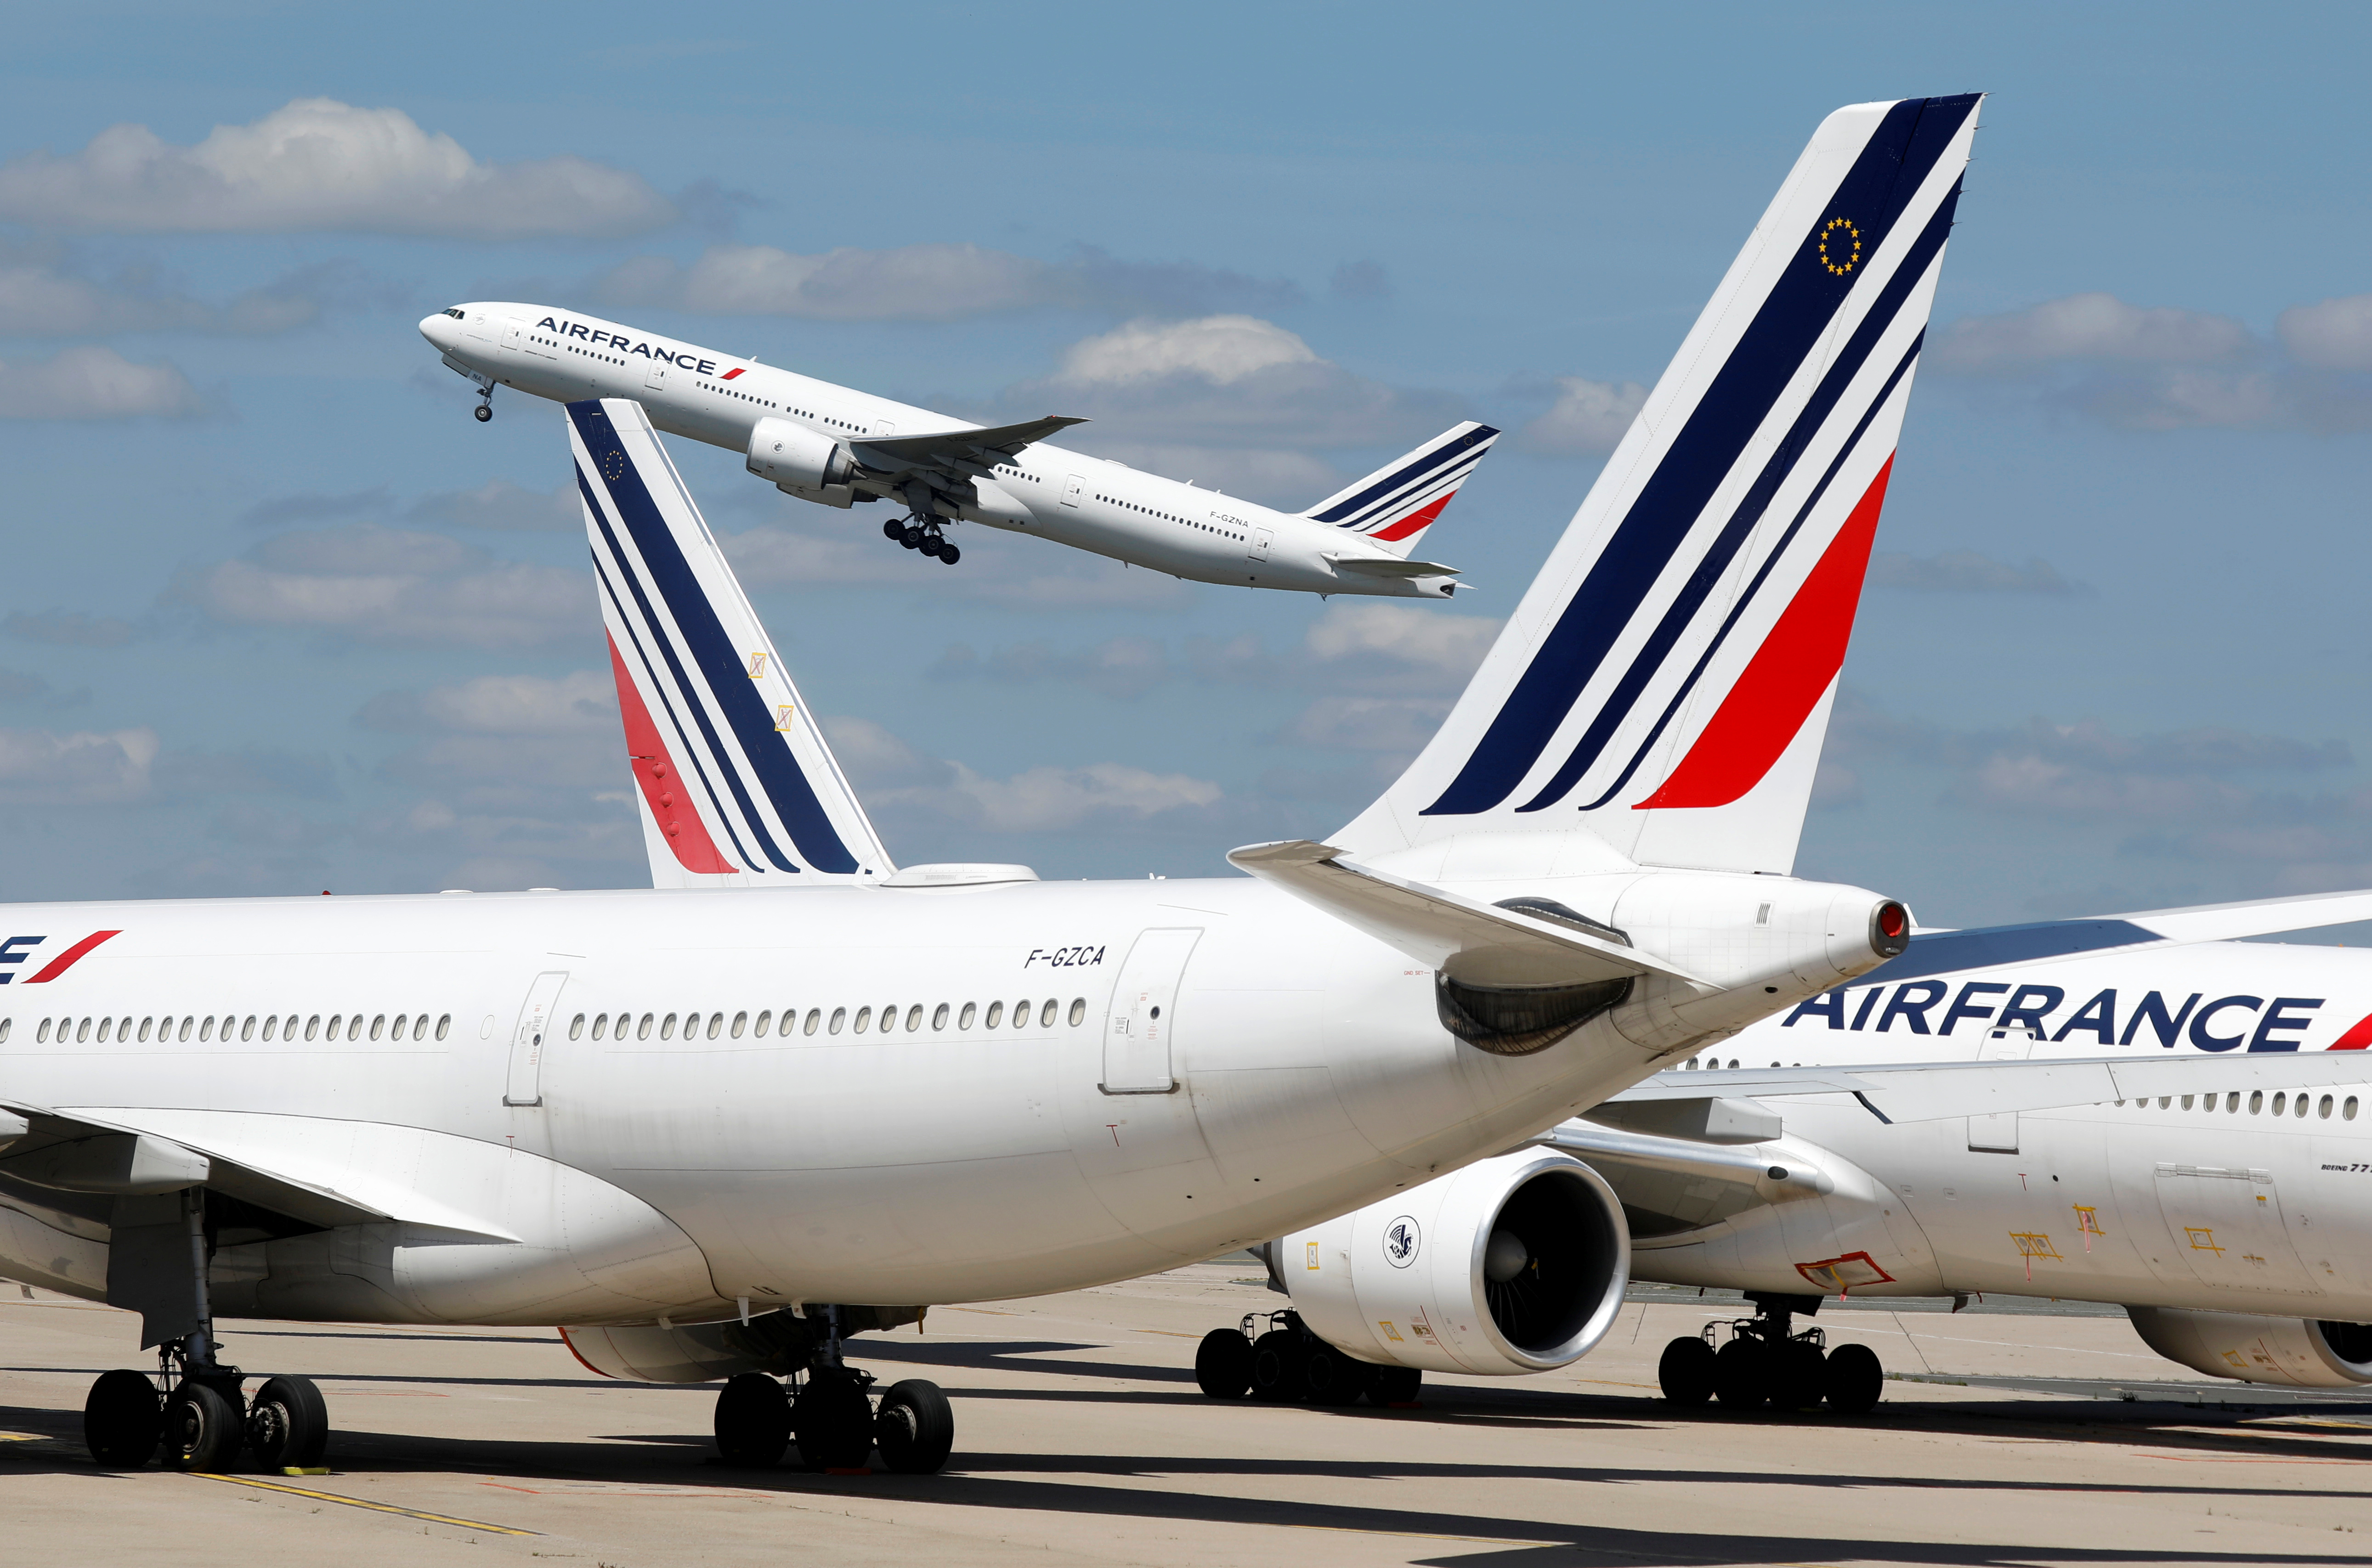 Restructuration : le syndicat des pilotes met en garde la direction d'Air France